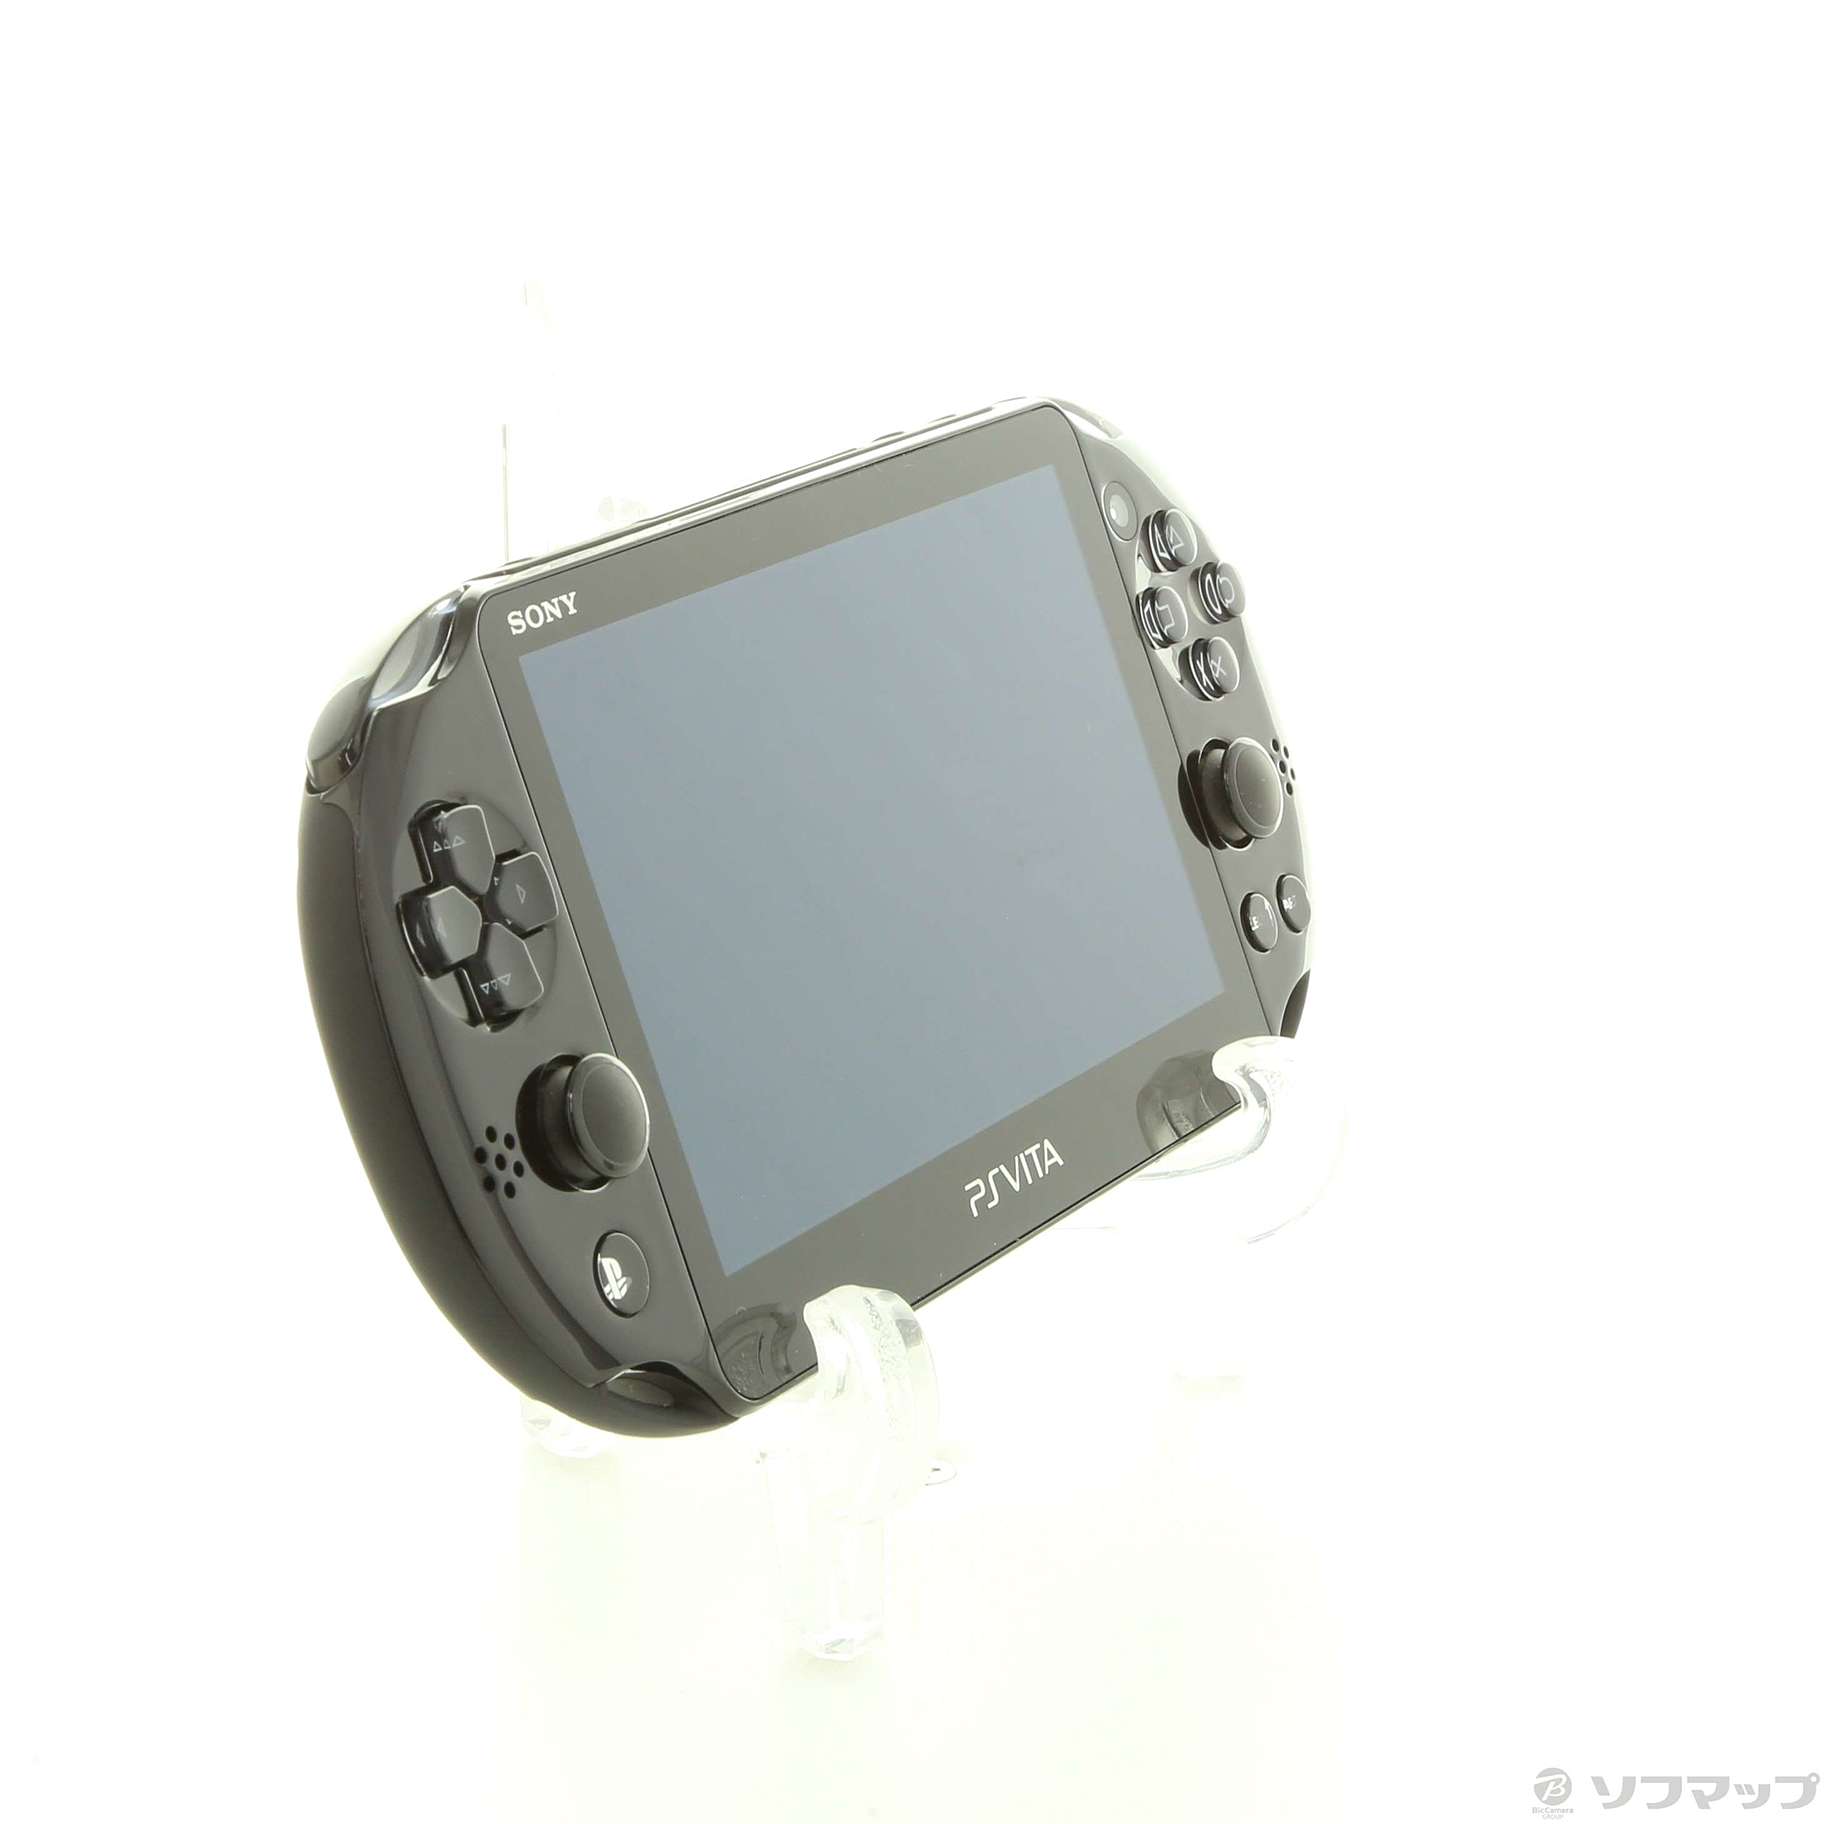 中古】PlayStation Vita Wi-Fiモデル ブラック PCH-2000ZA 